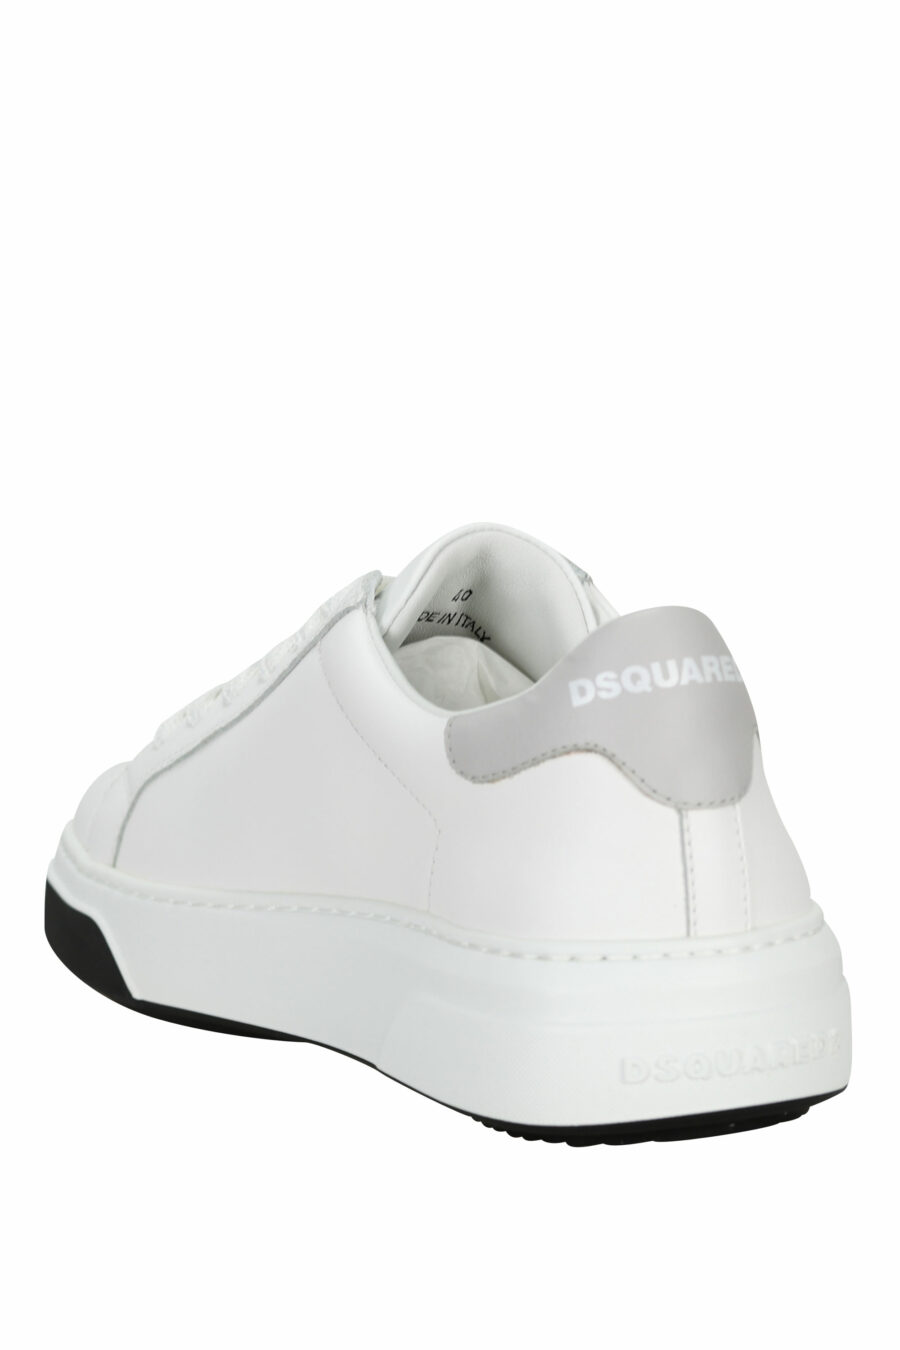 Zapatillas blancas con minilogo negro y suela bicolor - 805777319321 3